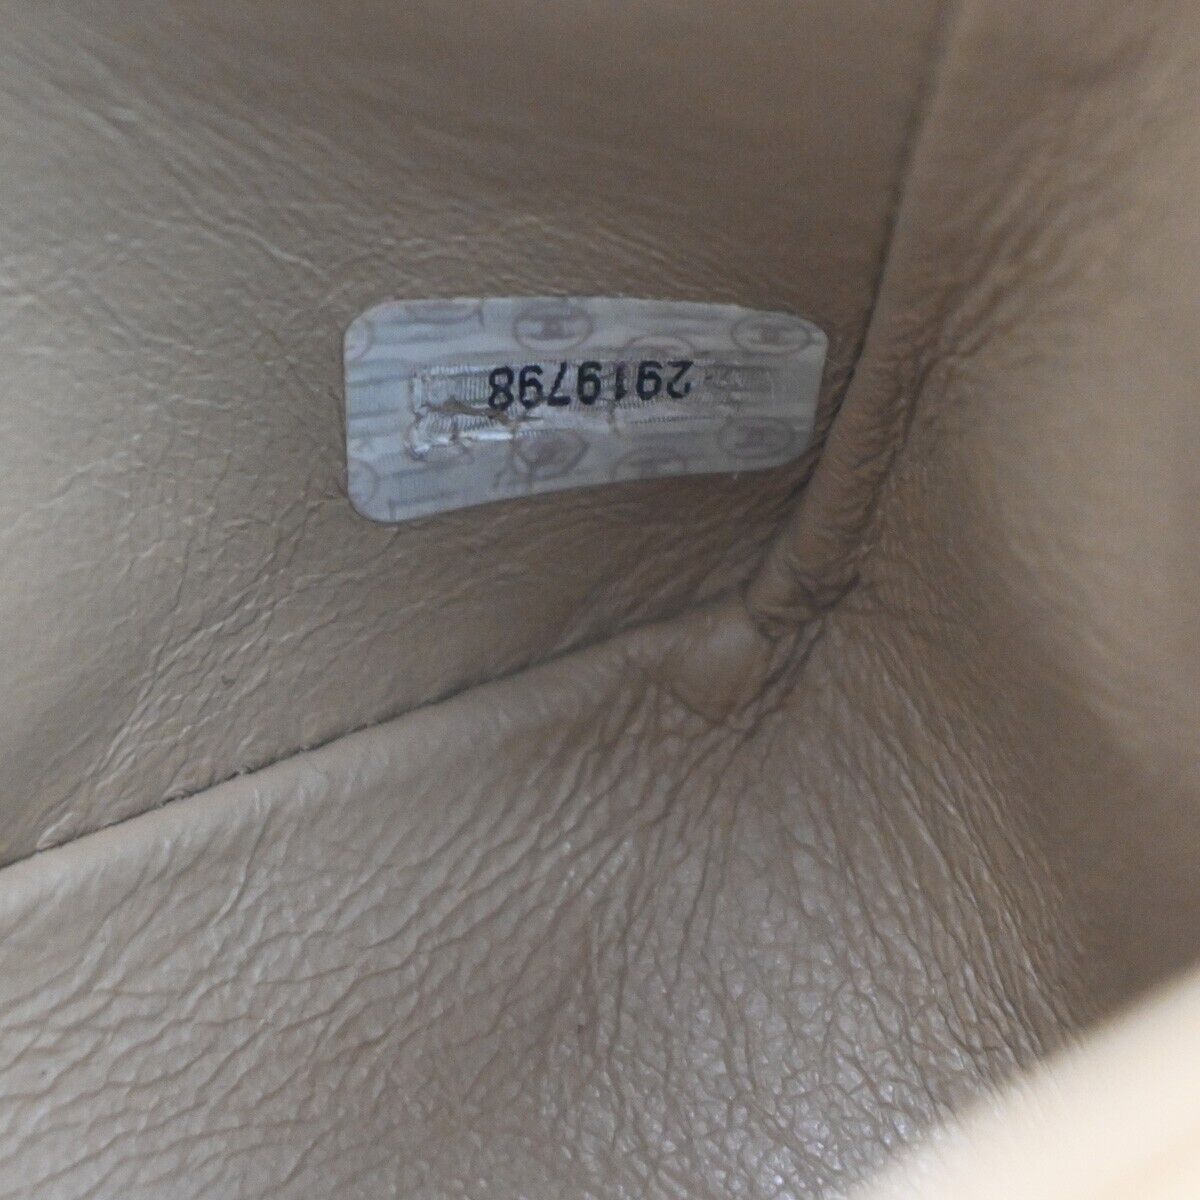 Pre-owned Chanel Timeless Beige Leather Shoulder Bag ()